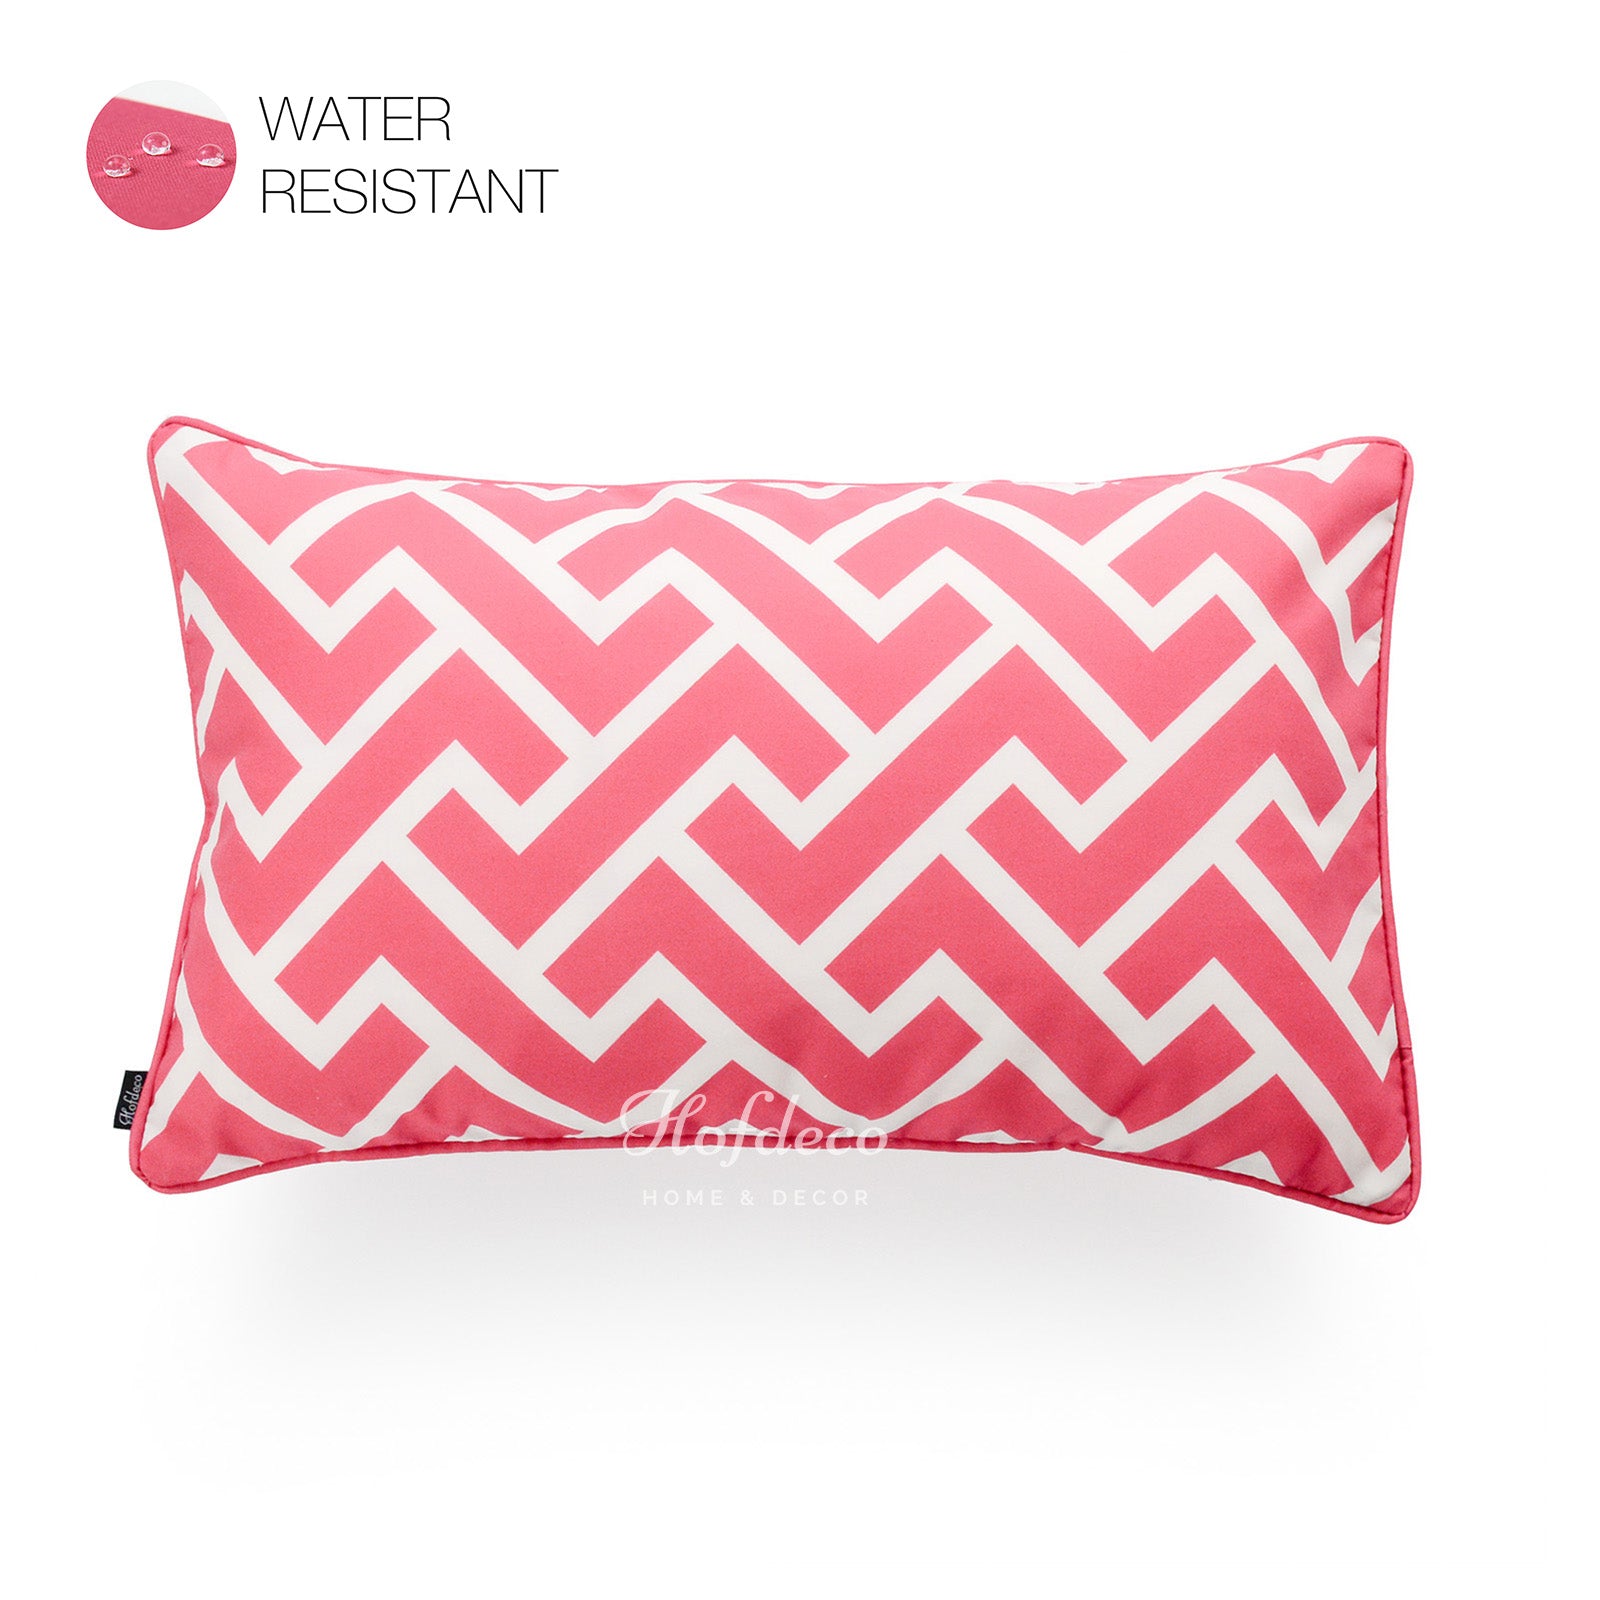 Hot Pink Outdoor Lumbar Pillow Cover, City Maze, 12"x20"